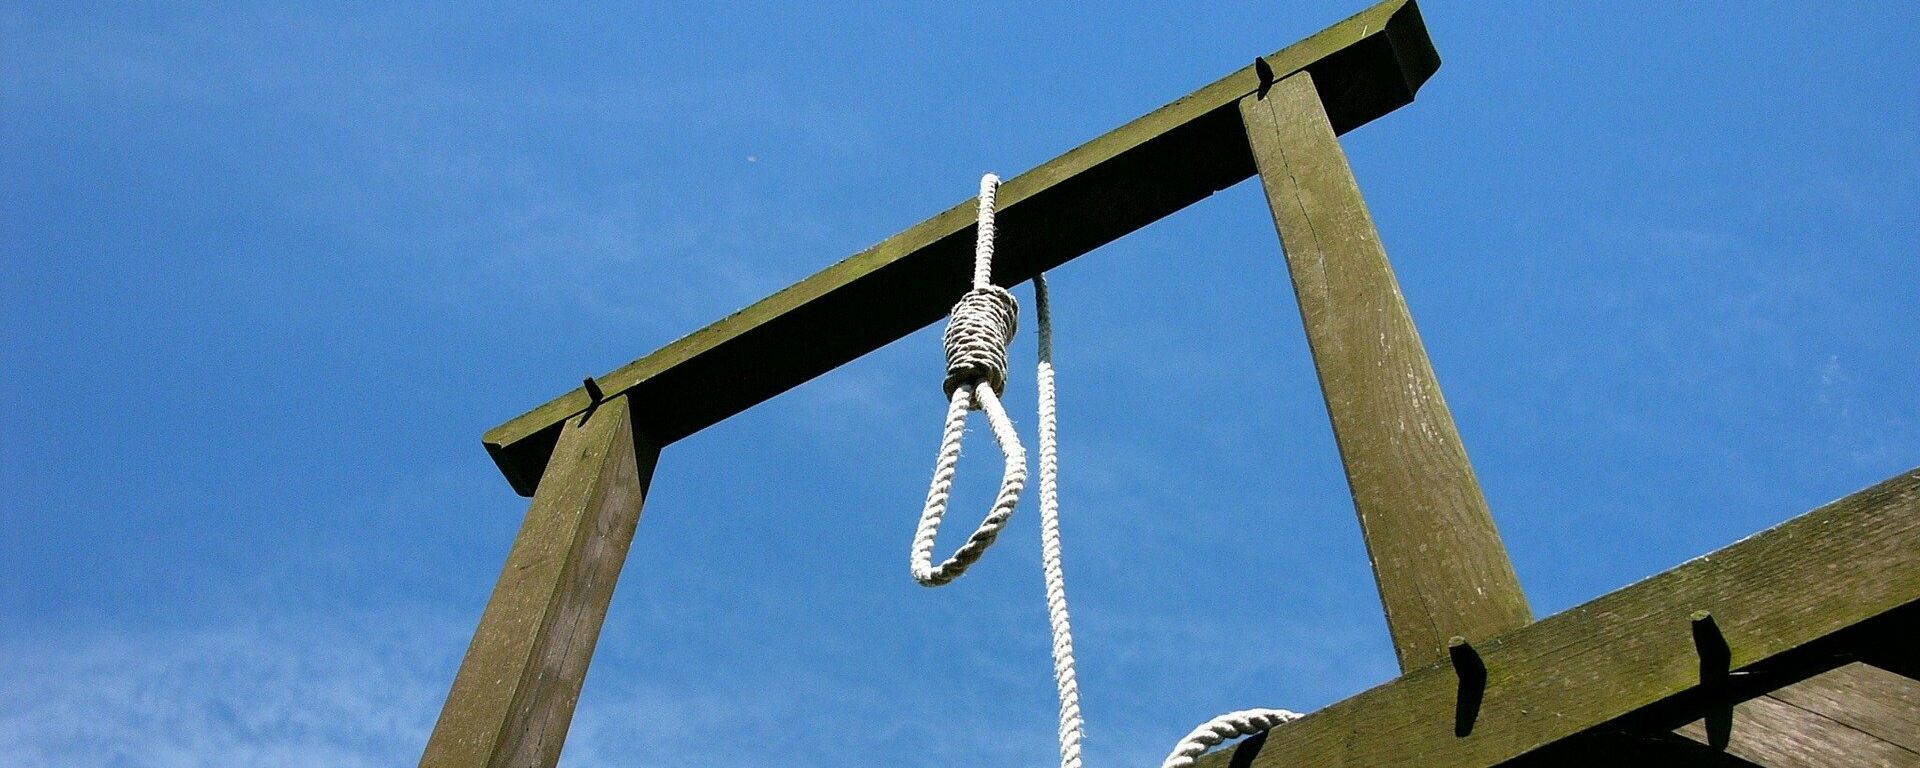 Sentencia de pena de muerte (imagen referencial) - Sputnik Mundo, 1920, 20.05.2021